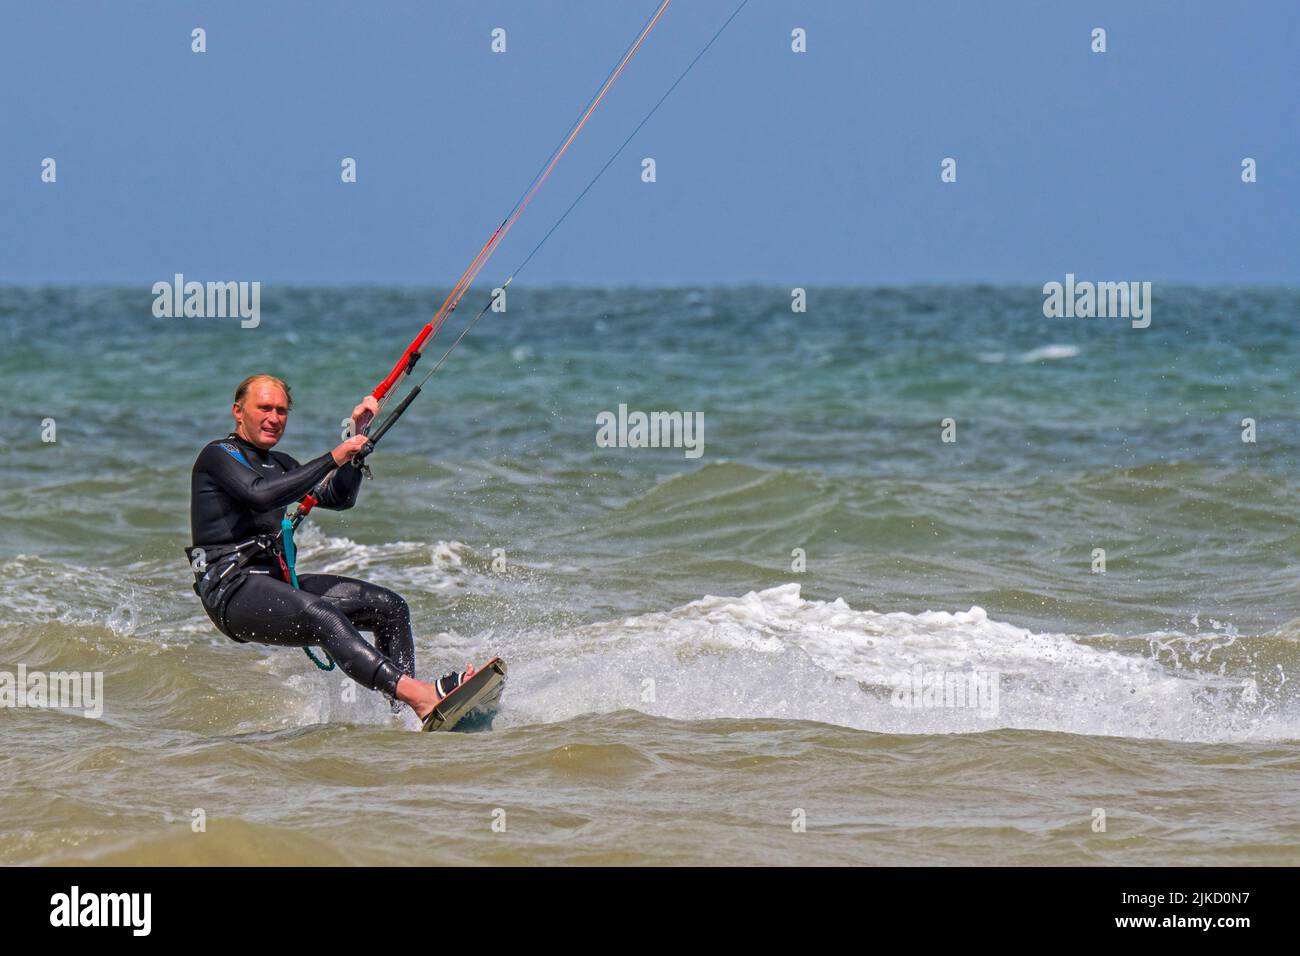 Kiteboarder / kitesurfer wearing wetsuit on twintip board kitesurfing on the North Sea Stock Photo